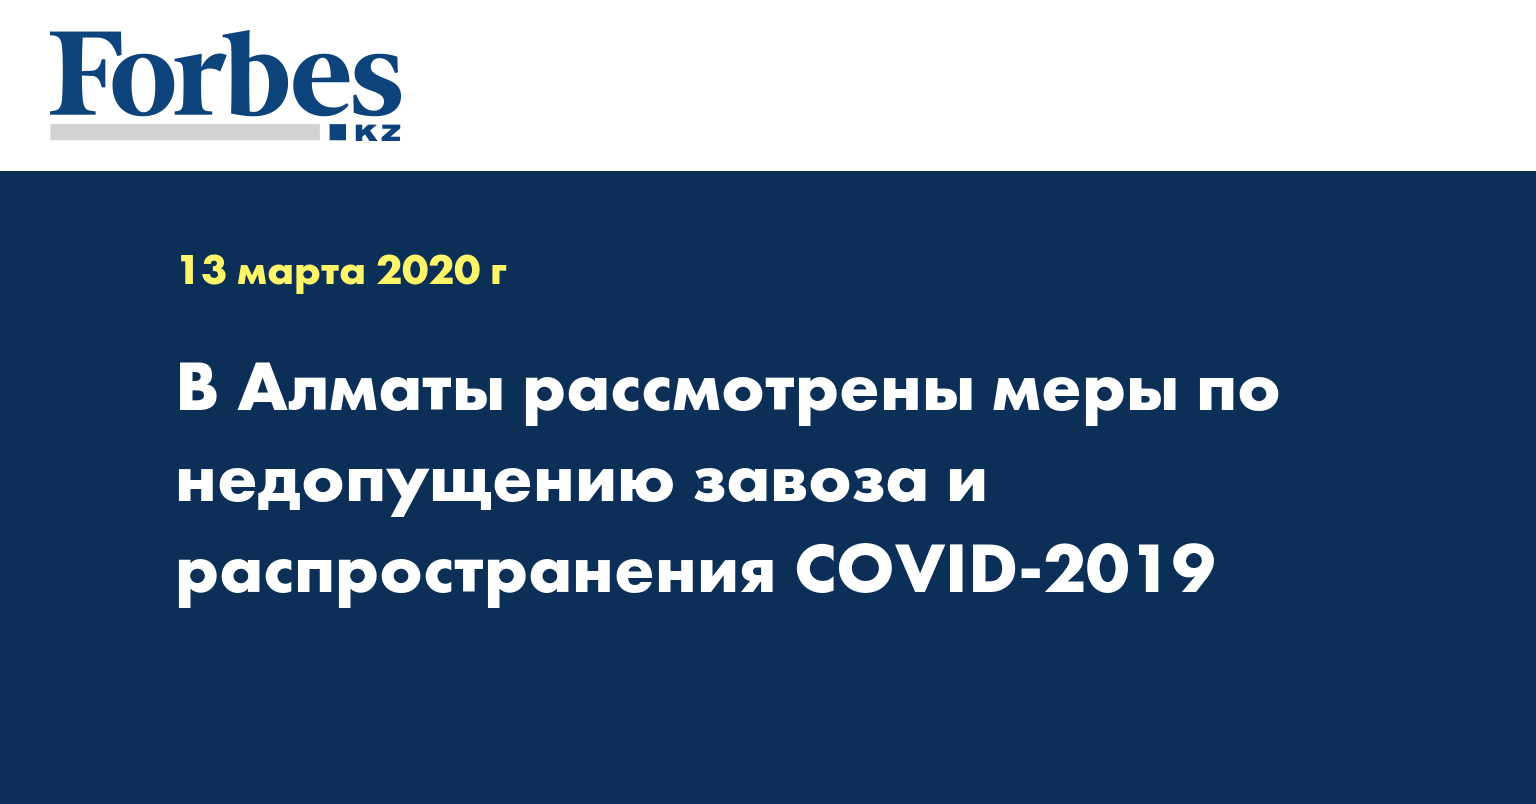 В Алматы рассмотрены меры по недопущению завоза и распространения COVID-2019